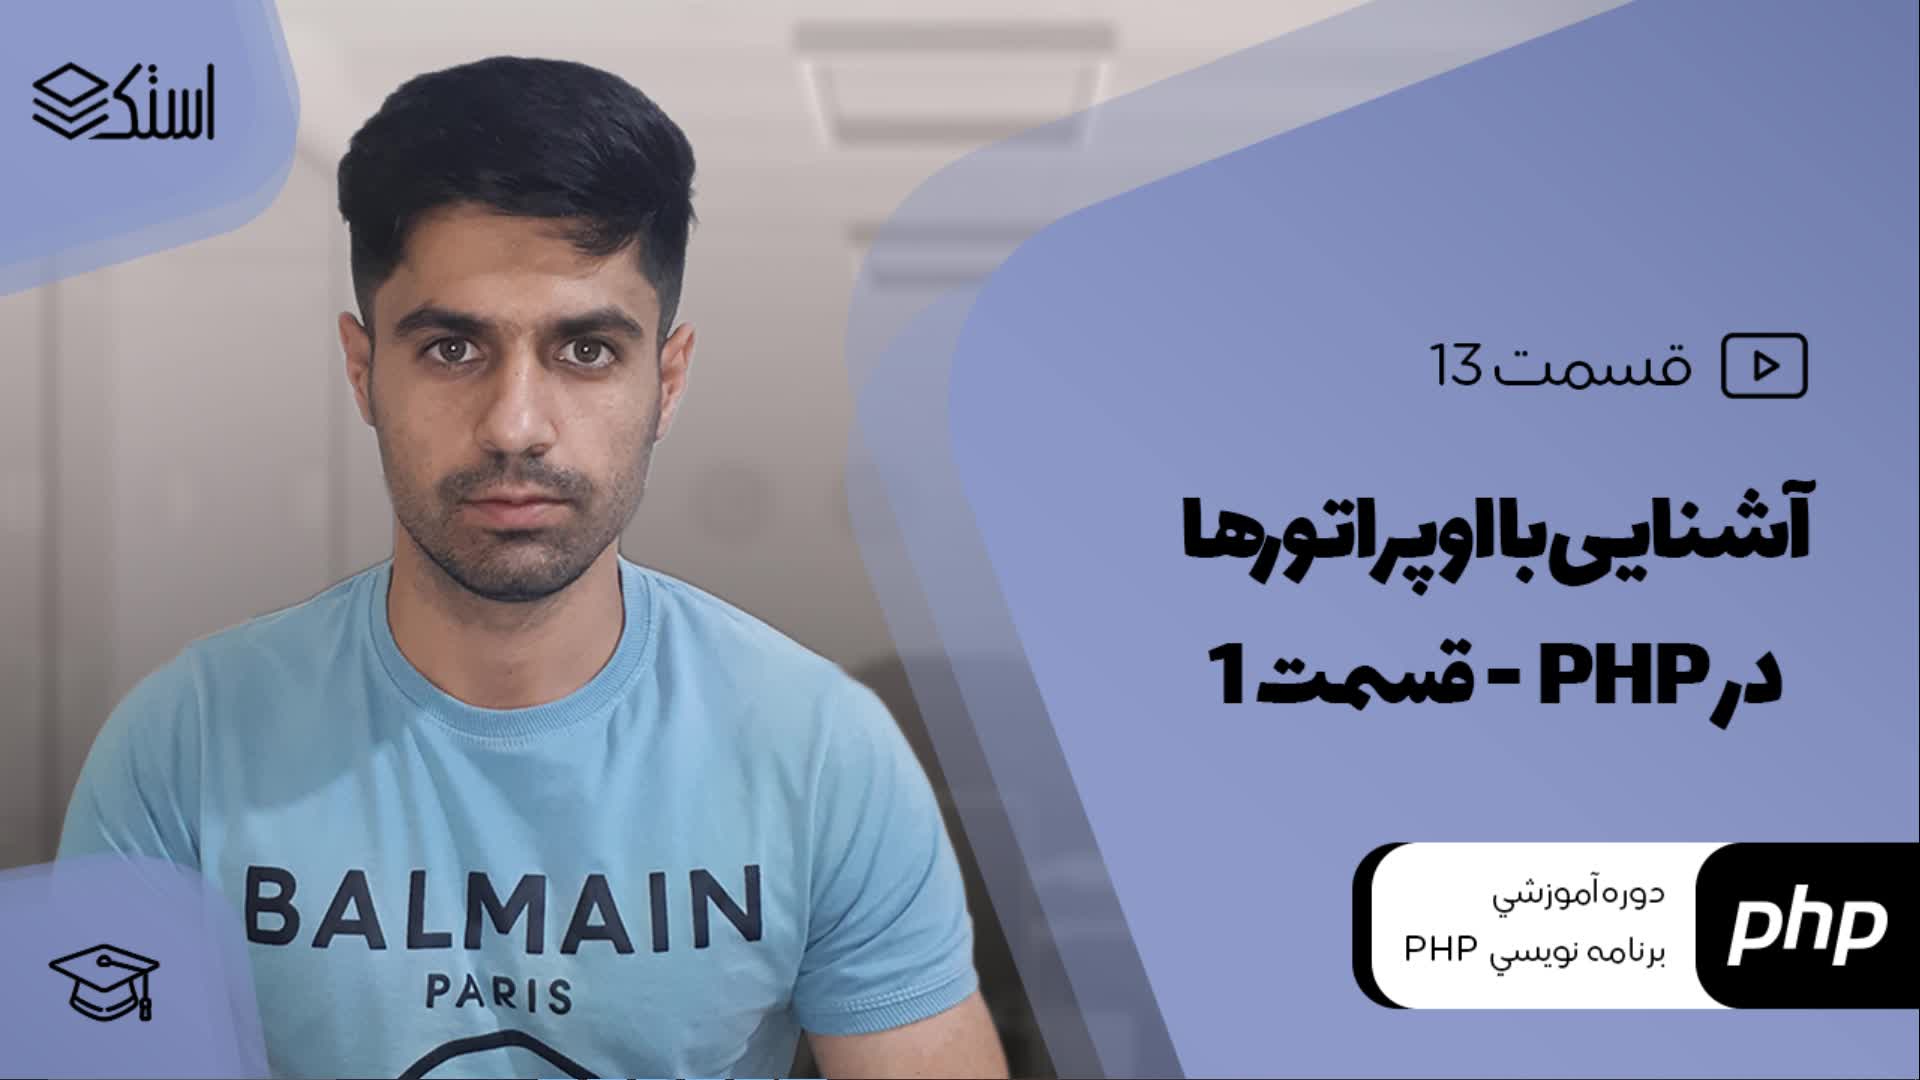 آشنایی با اپراتورهای حسابی، اختصاصی و اتصال رشته در PHP (ویدیو + توضیحات) - قسمت 13 - استک لرن